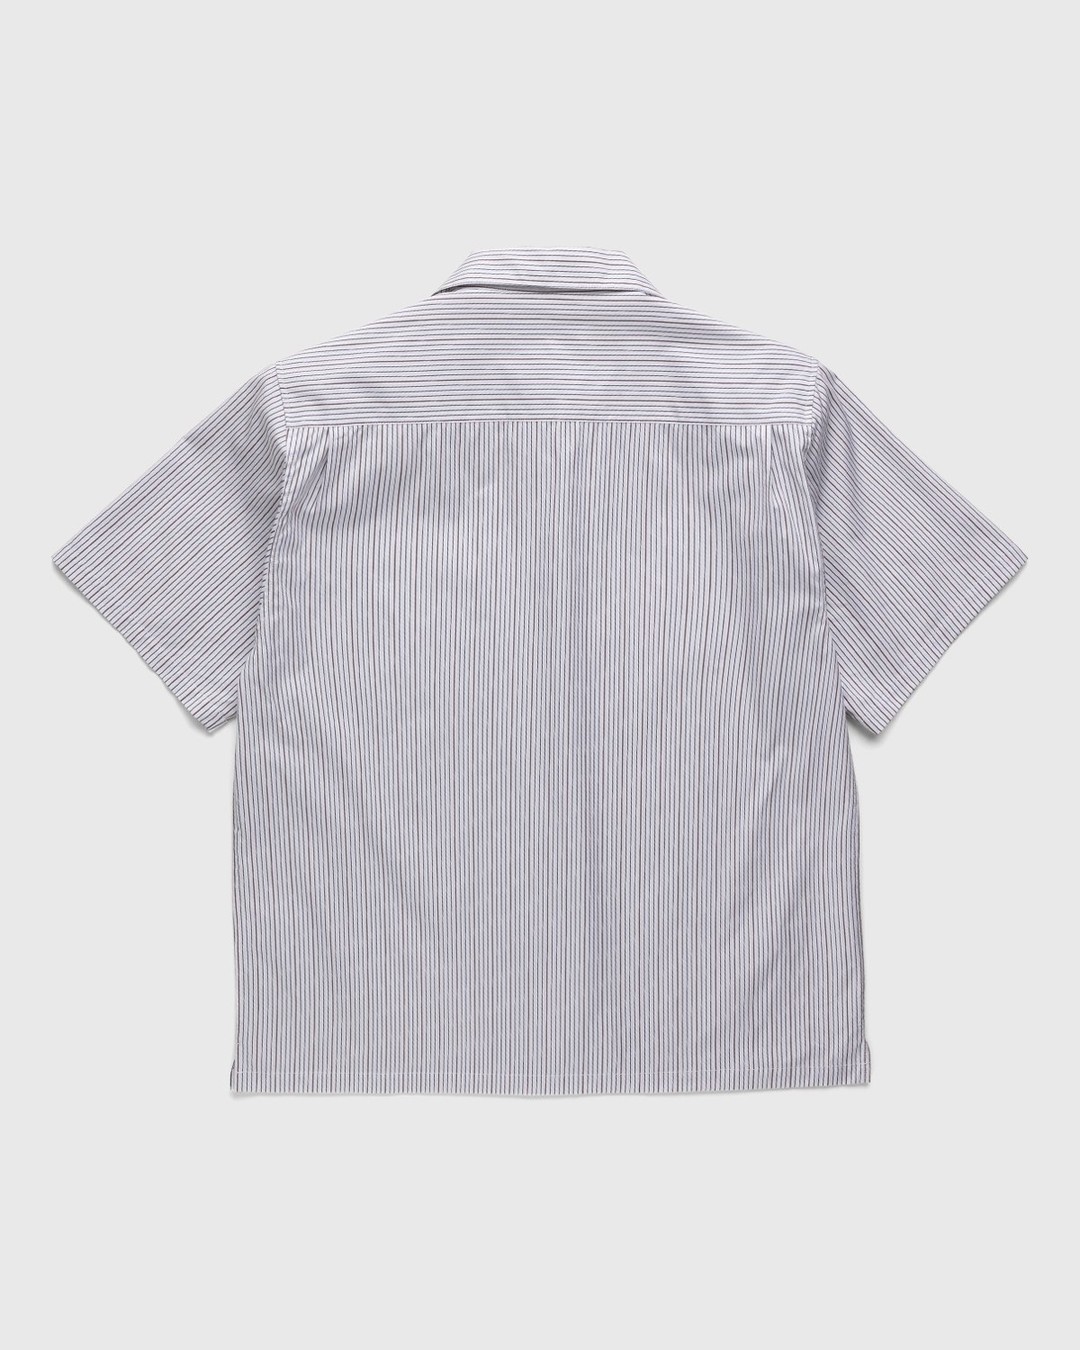 Highsnobiety – Striped Poplin Short-Sleeve Shirt White/Black - Shirts - White - Image 2